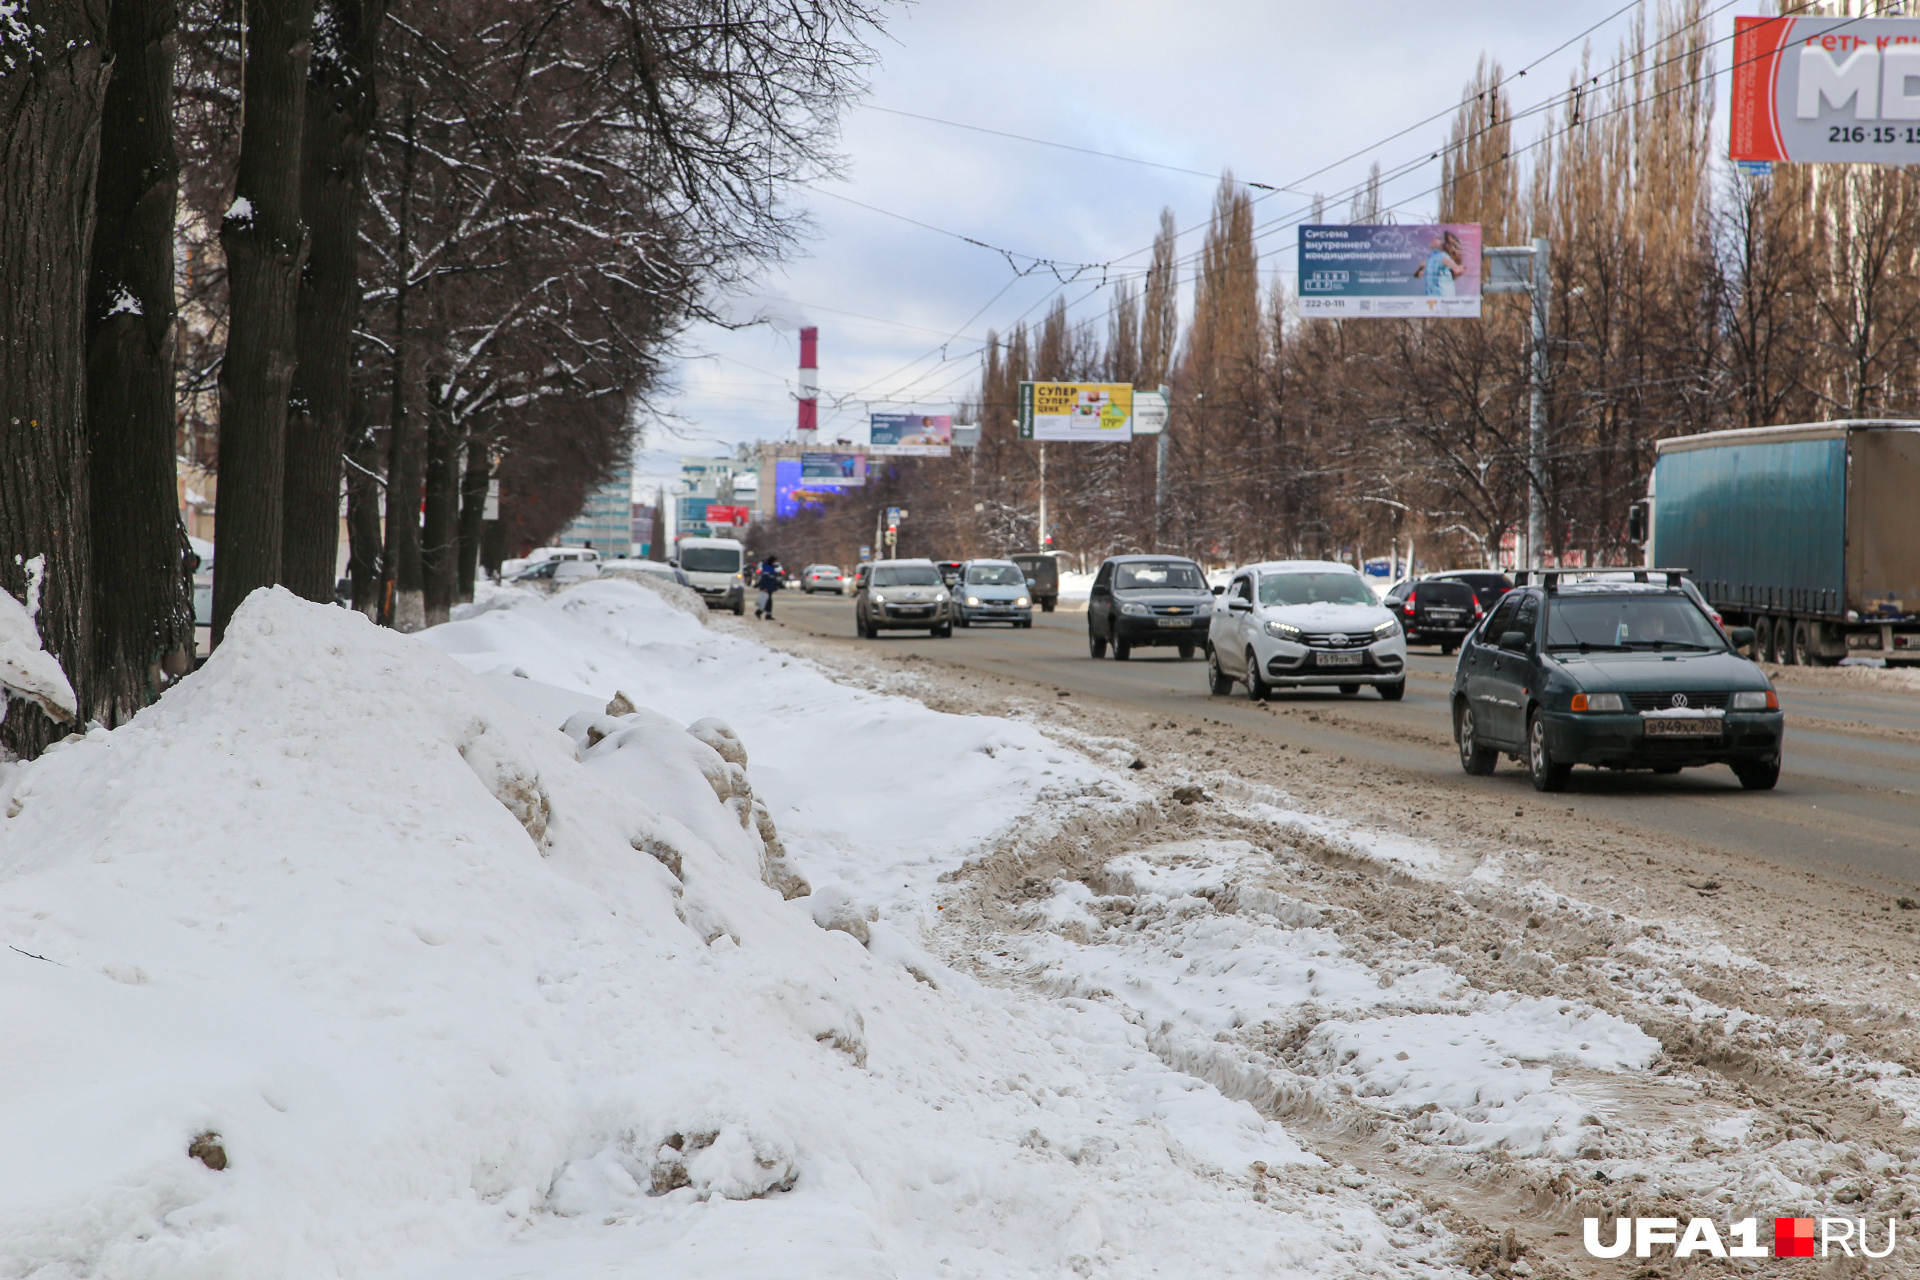 А это улица Зорге, одна полоса просто исчезла в снежном плену